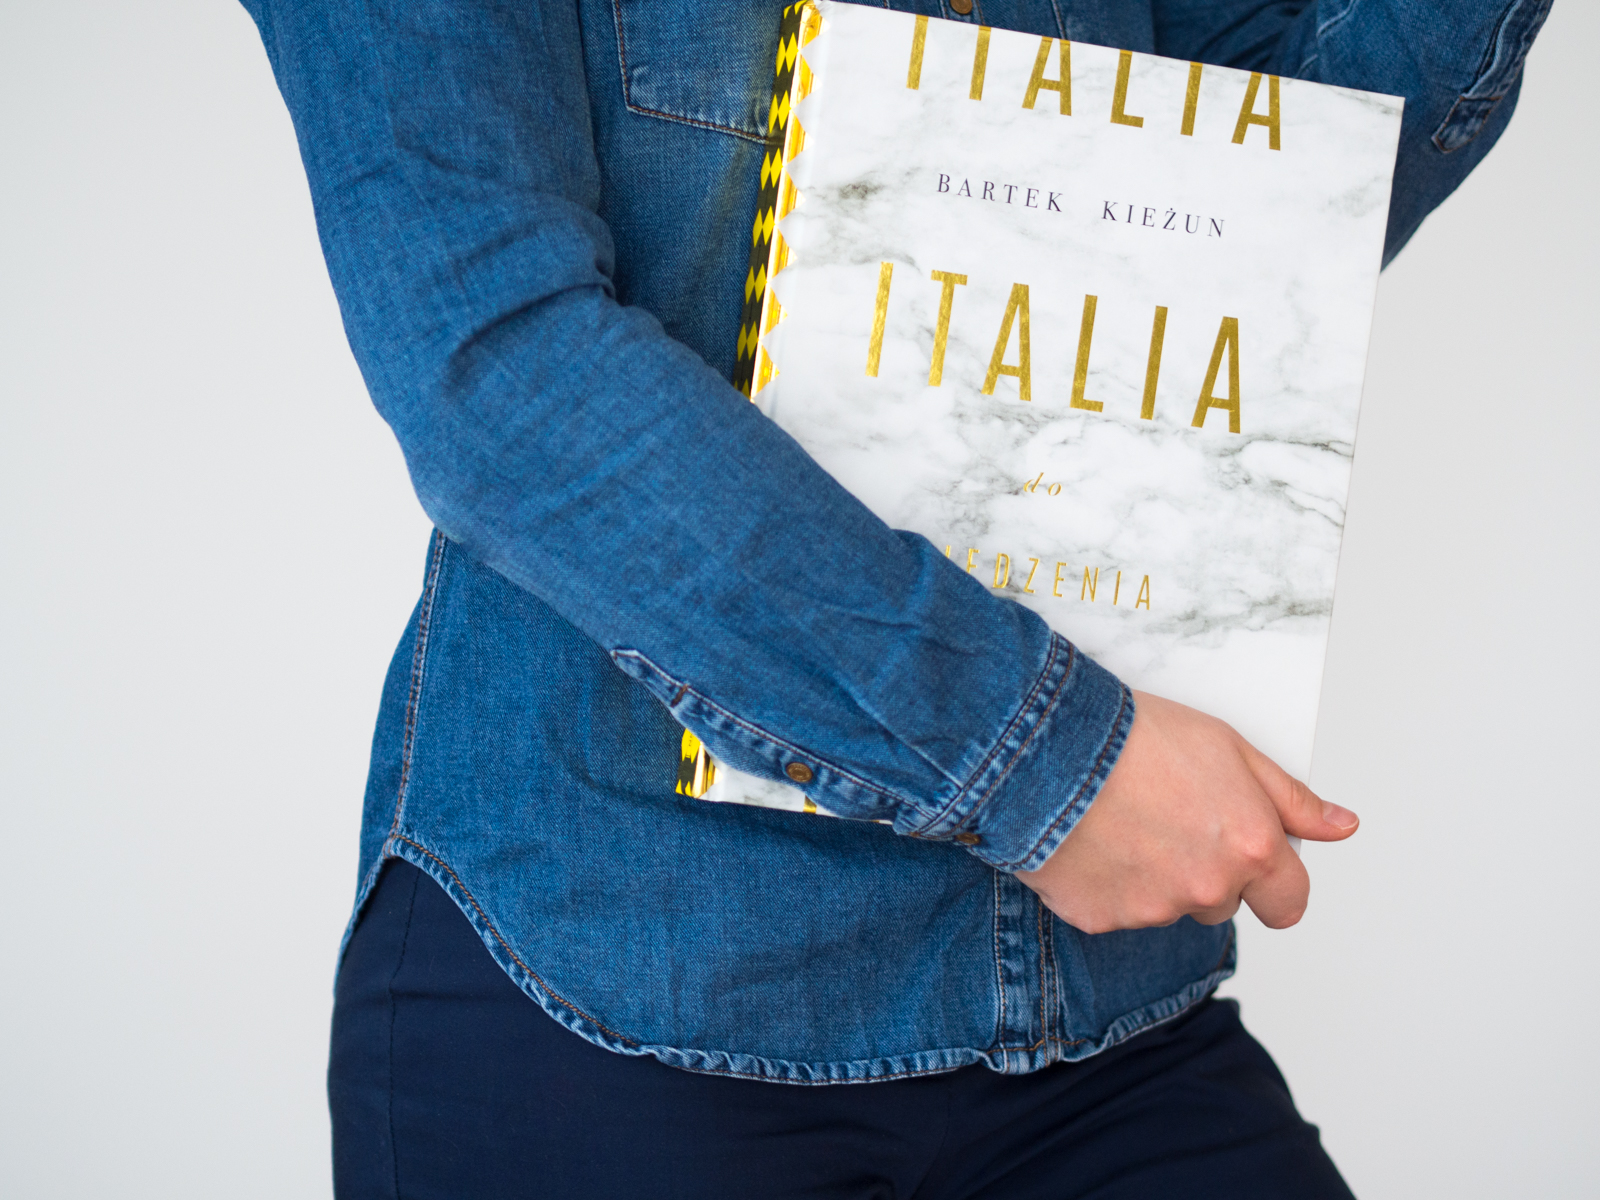 Biblioteka dietetyka: Italia do zjedzenia – Bartek Kieżun